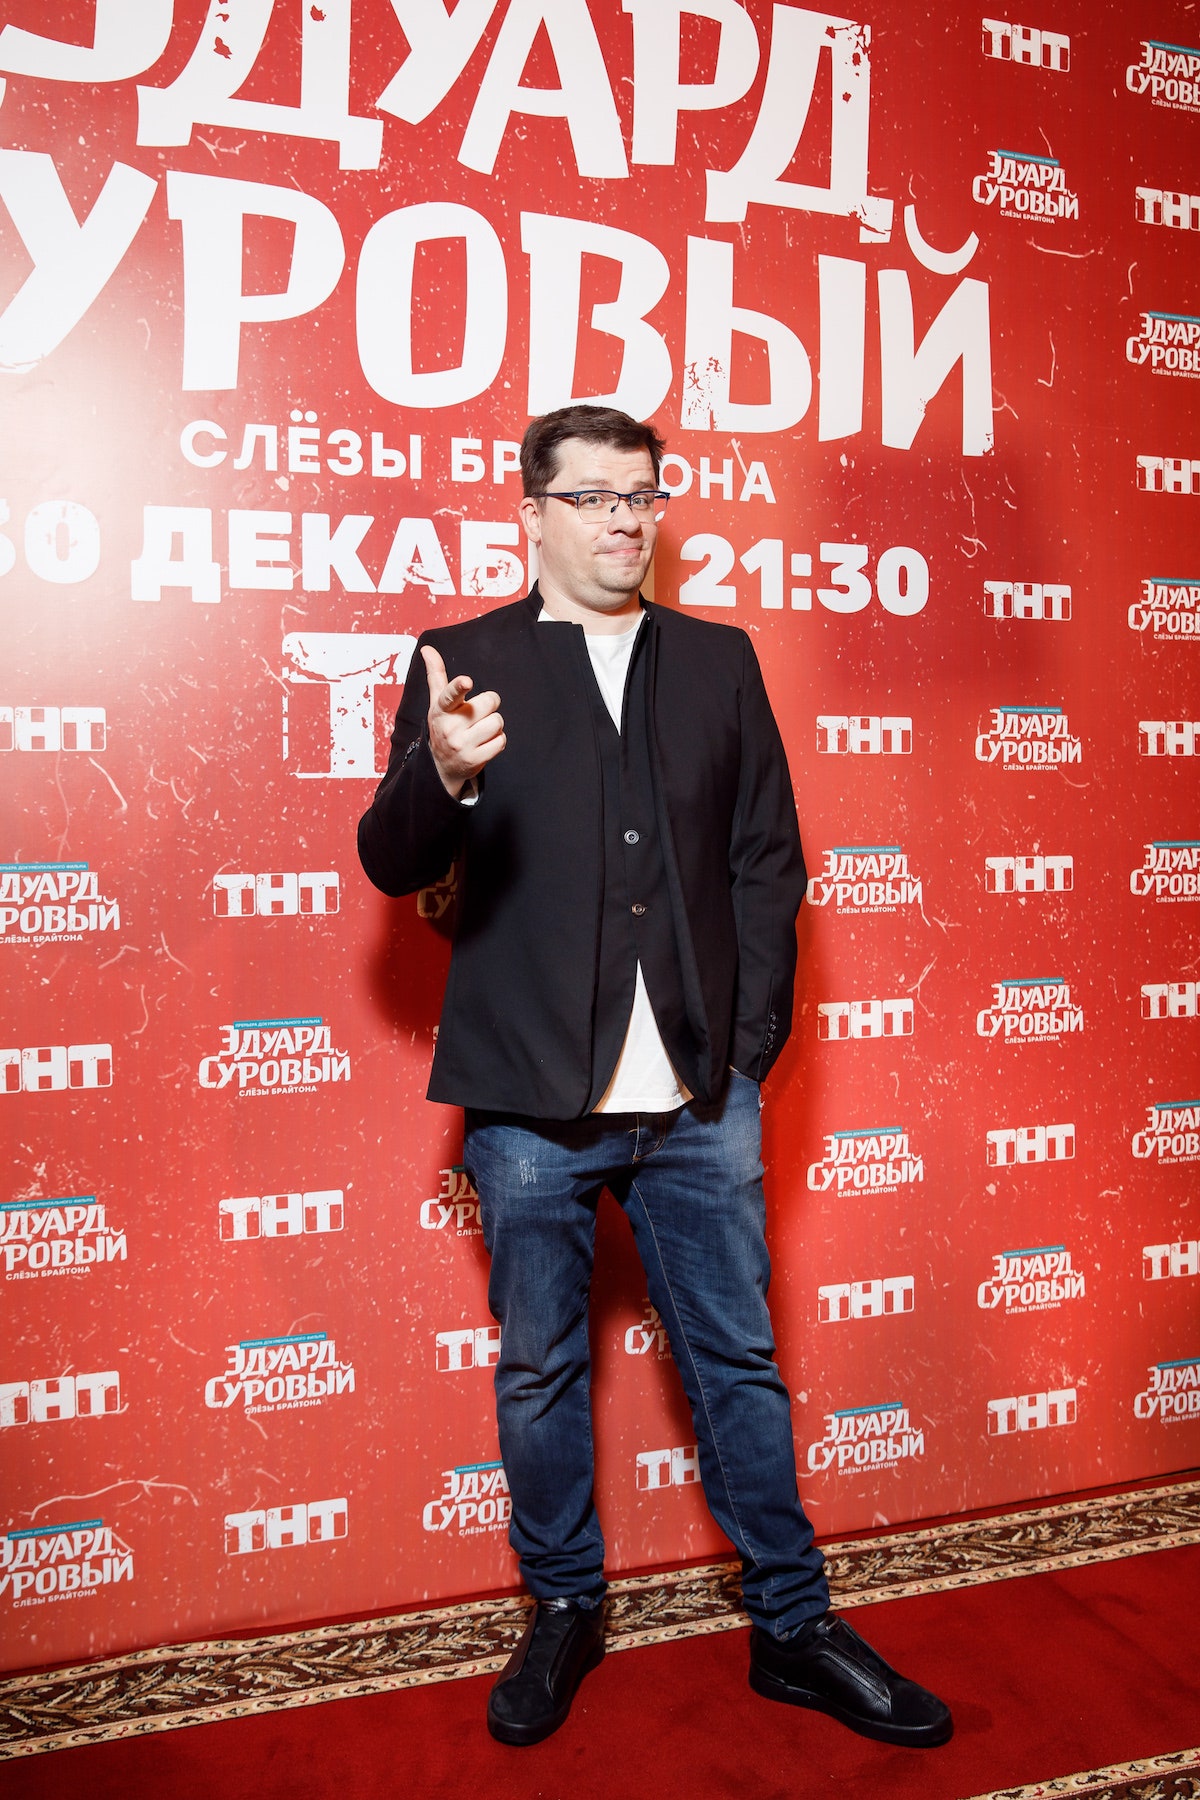 Гарик Харламов — об Эдуарде Суровом трендах в юморе и Comedy Club